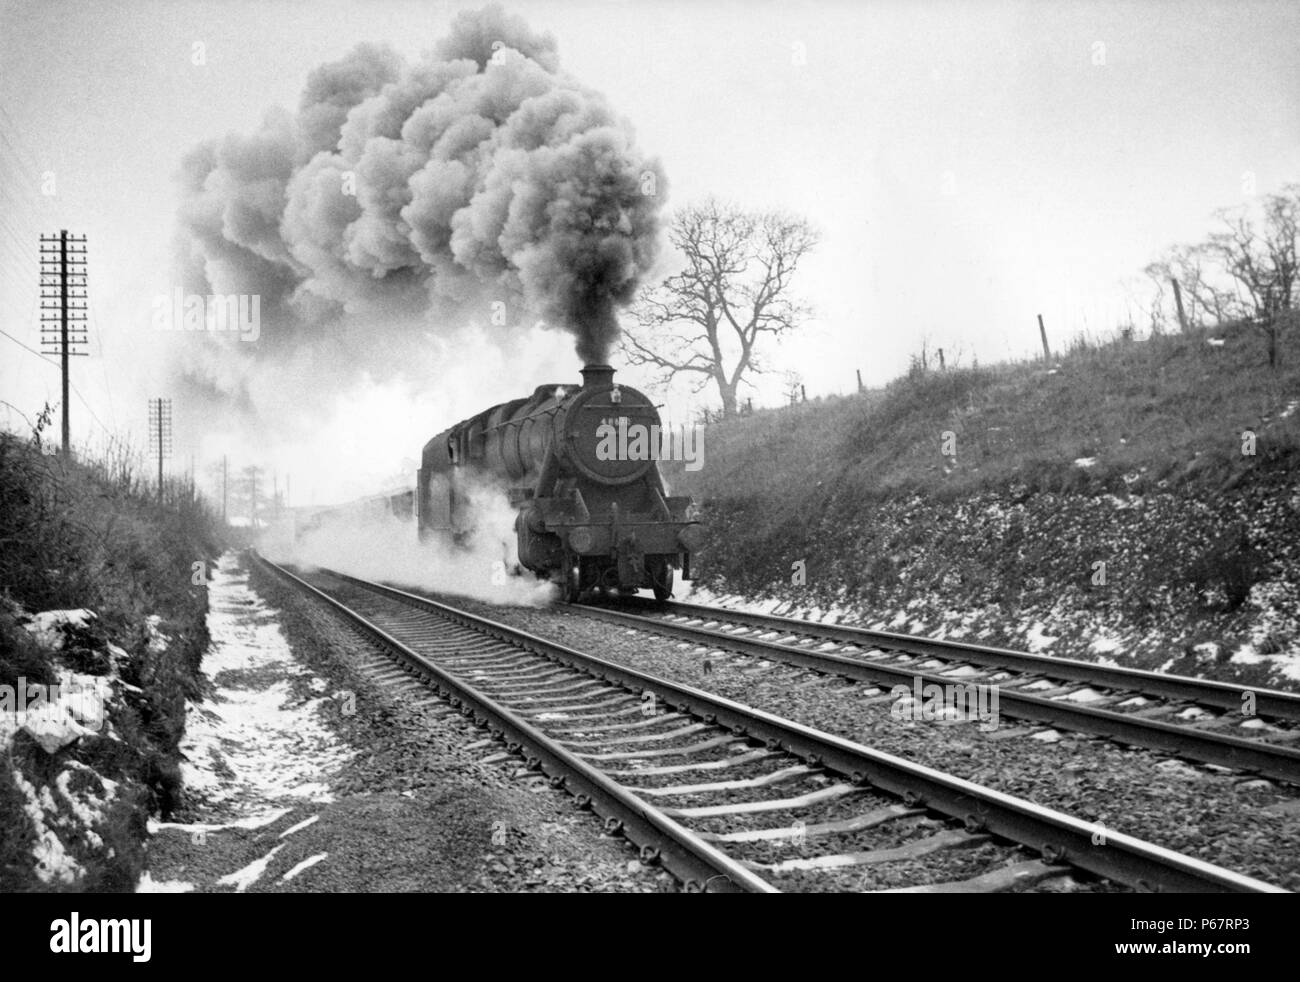 Uno de los últimos trabajos de vapor en la línea principal de Midland fue el 14:35 mercancías de Leicester para Wellingborough. El tren es visto aquí acercando Milep Foto de stock